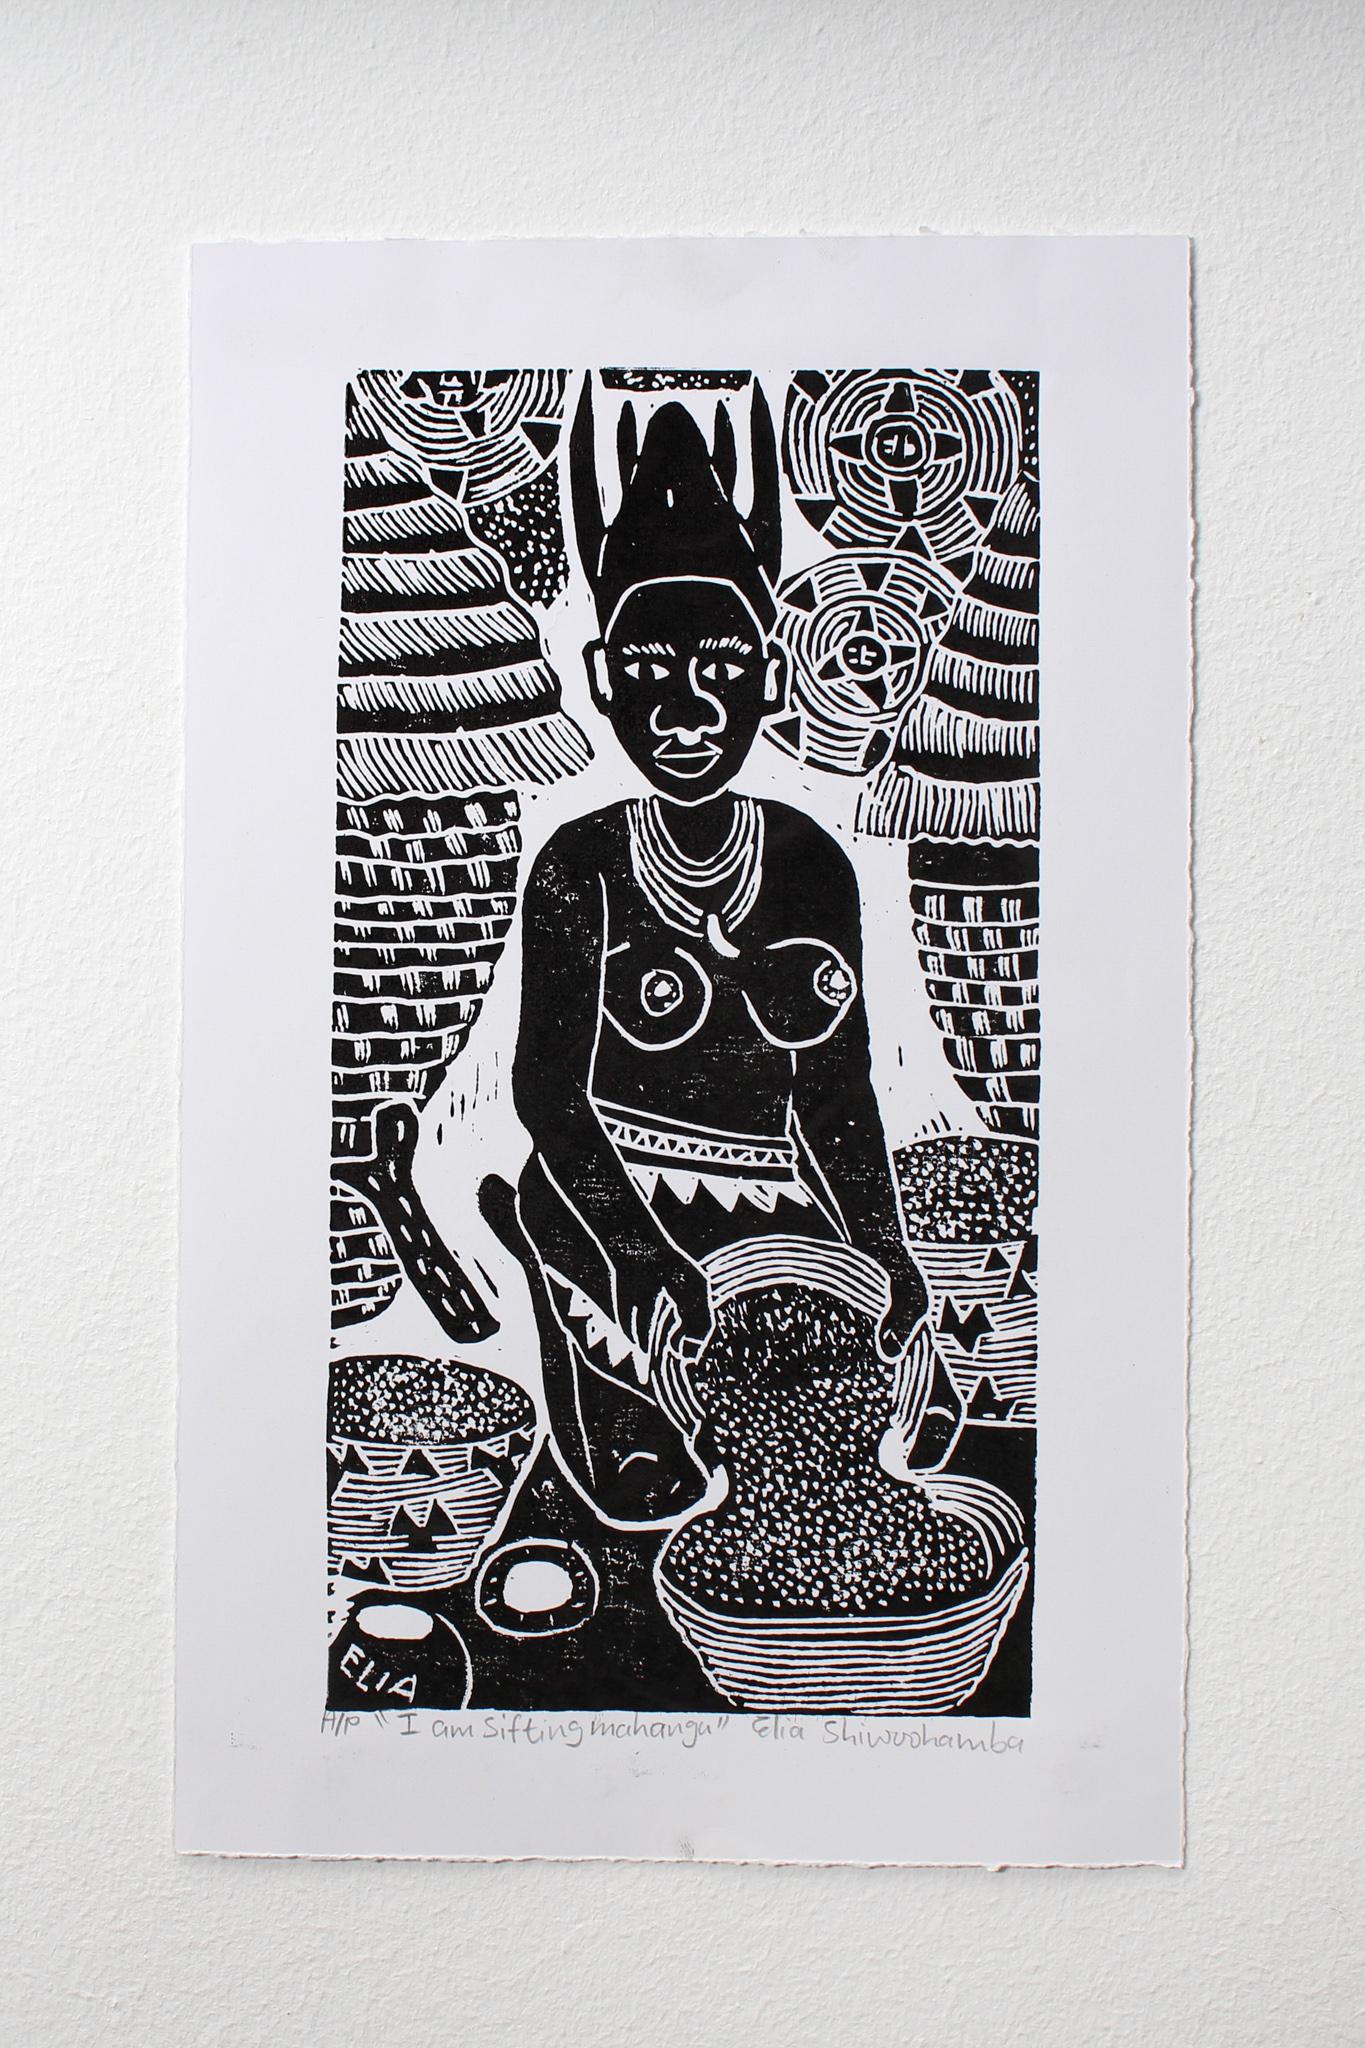 Ich siebe Mahangu, Linoleumdrucke auf Papier.

Elia Shiwoohamba wurde 1981 in Windhoek, Namibia, geboren. Im Jahr 2006 machte er seinen Abschluss am John Muafangejo Art Centre in Windhoek. Shiwoohamba ist auf Druckgrafik und Bildhauerei